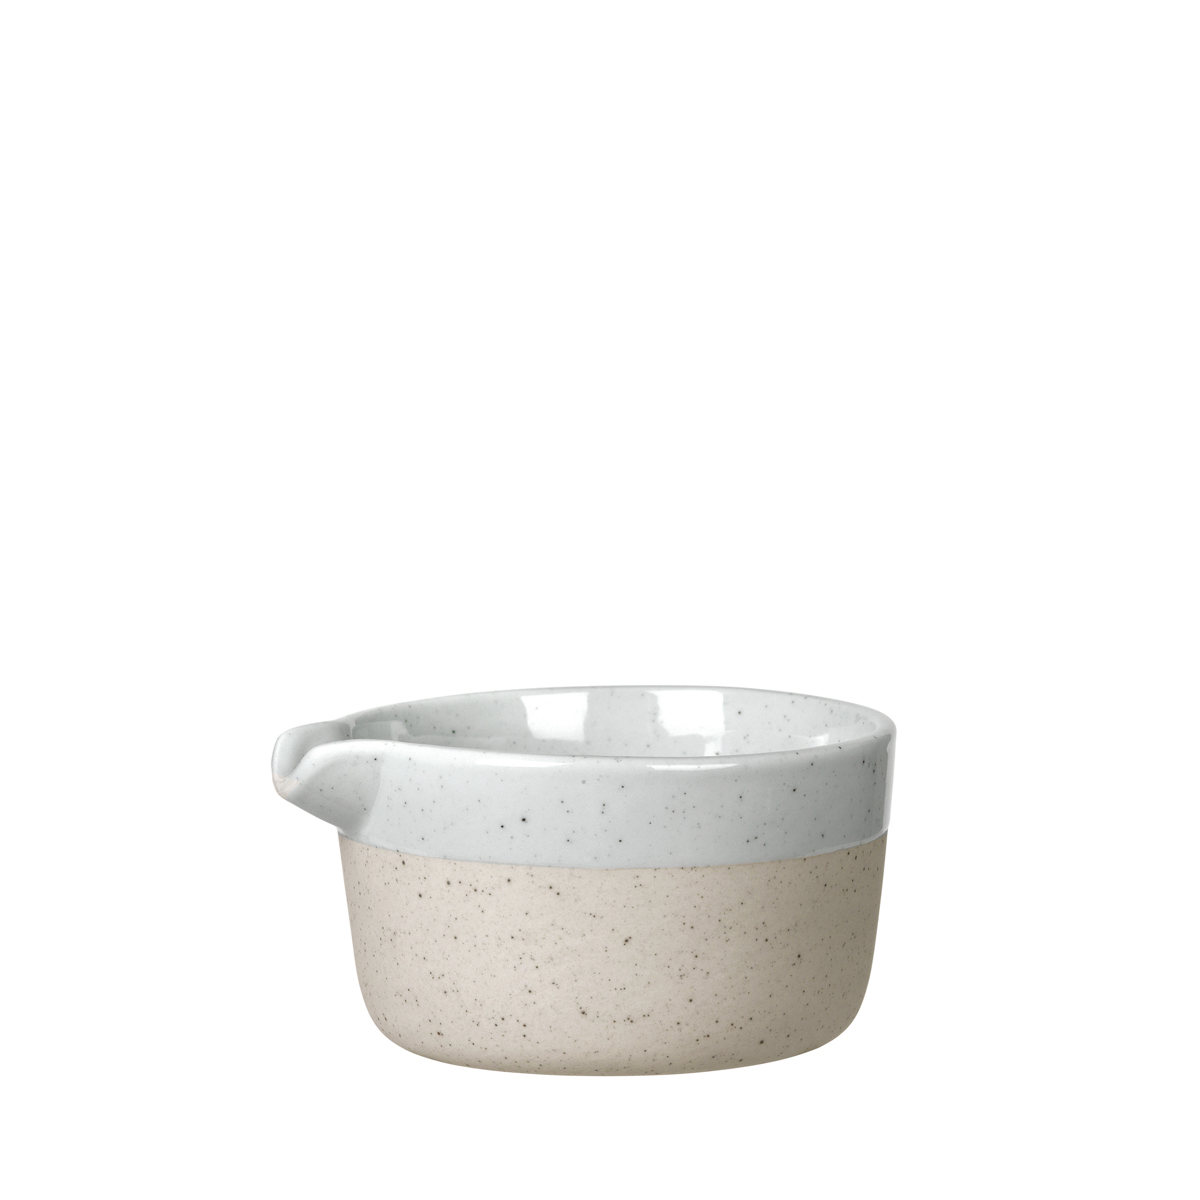 Milchkännchen -SABLO- Cloud 150 ml, Ø 8,5 cm. Material: Keramik. Von Blomus.